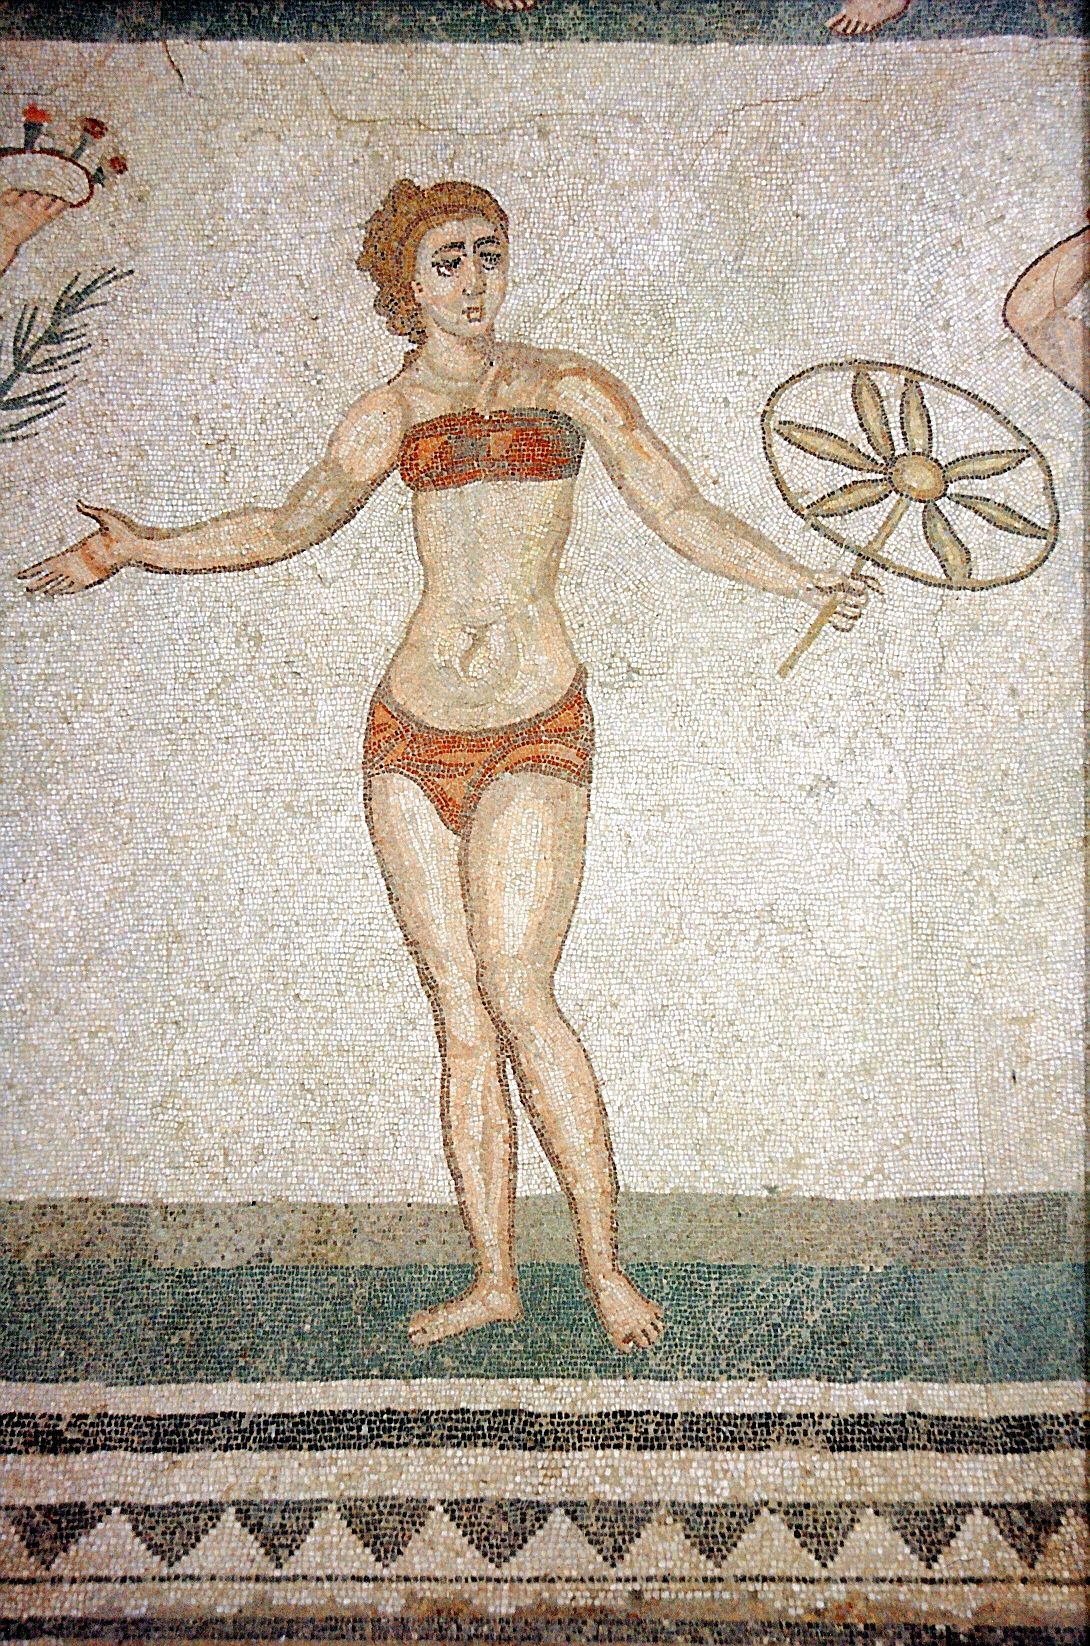 Mosaik perempuan di era Romawi mengenakan pakaian seperti bikini.